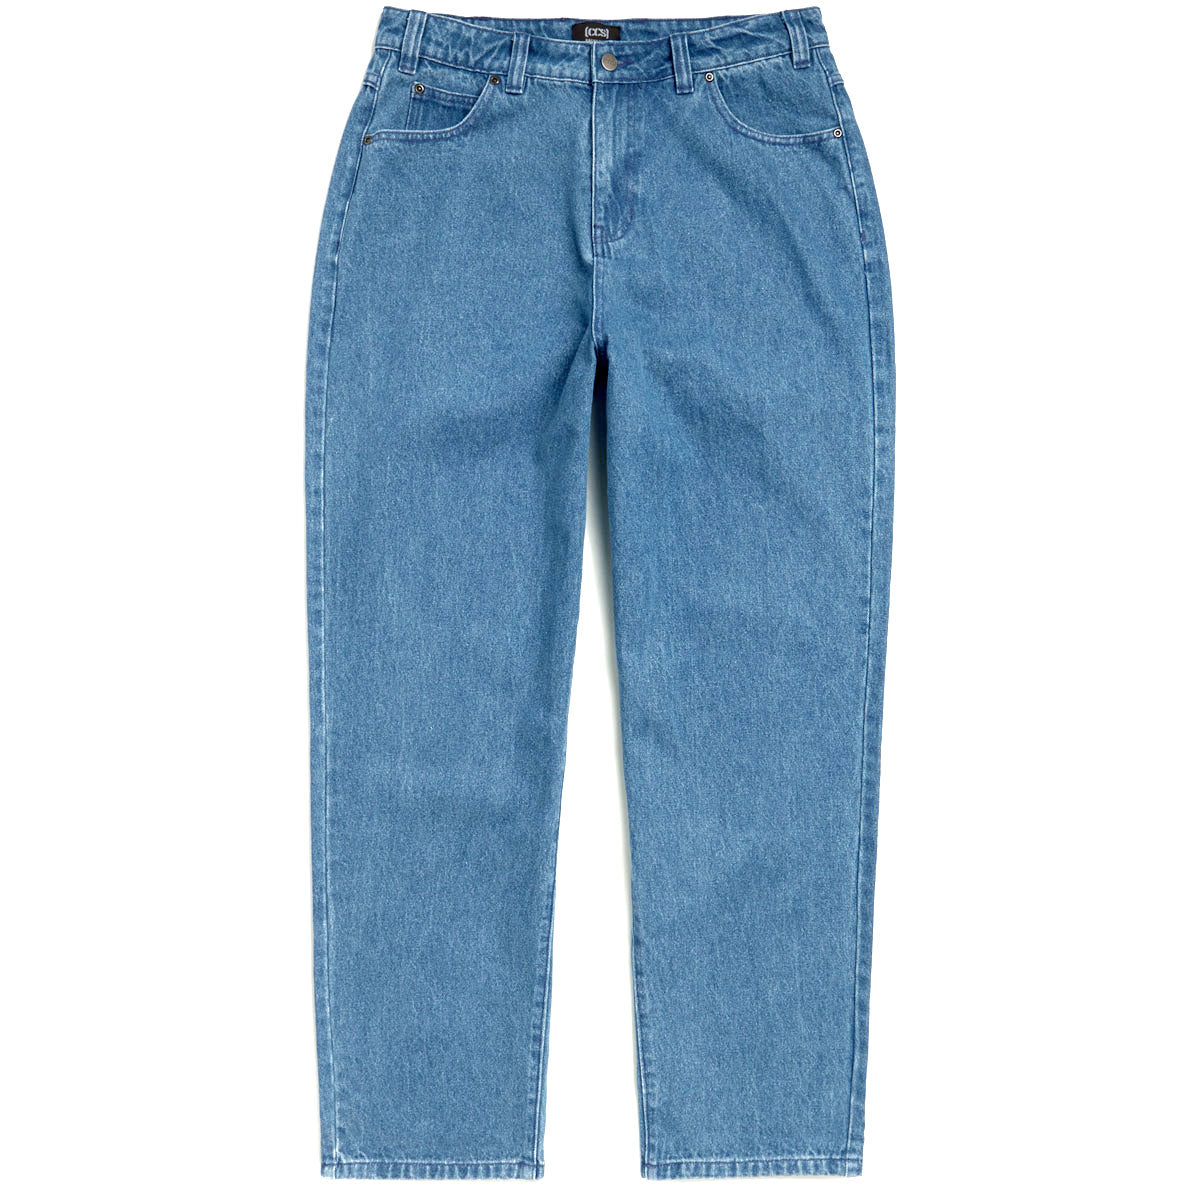 CCS Baggy Taper Denim Jeans - Medium Wash